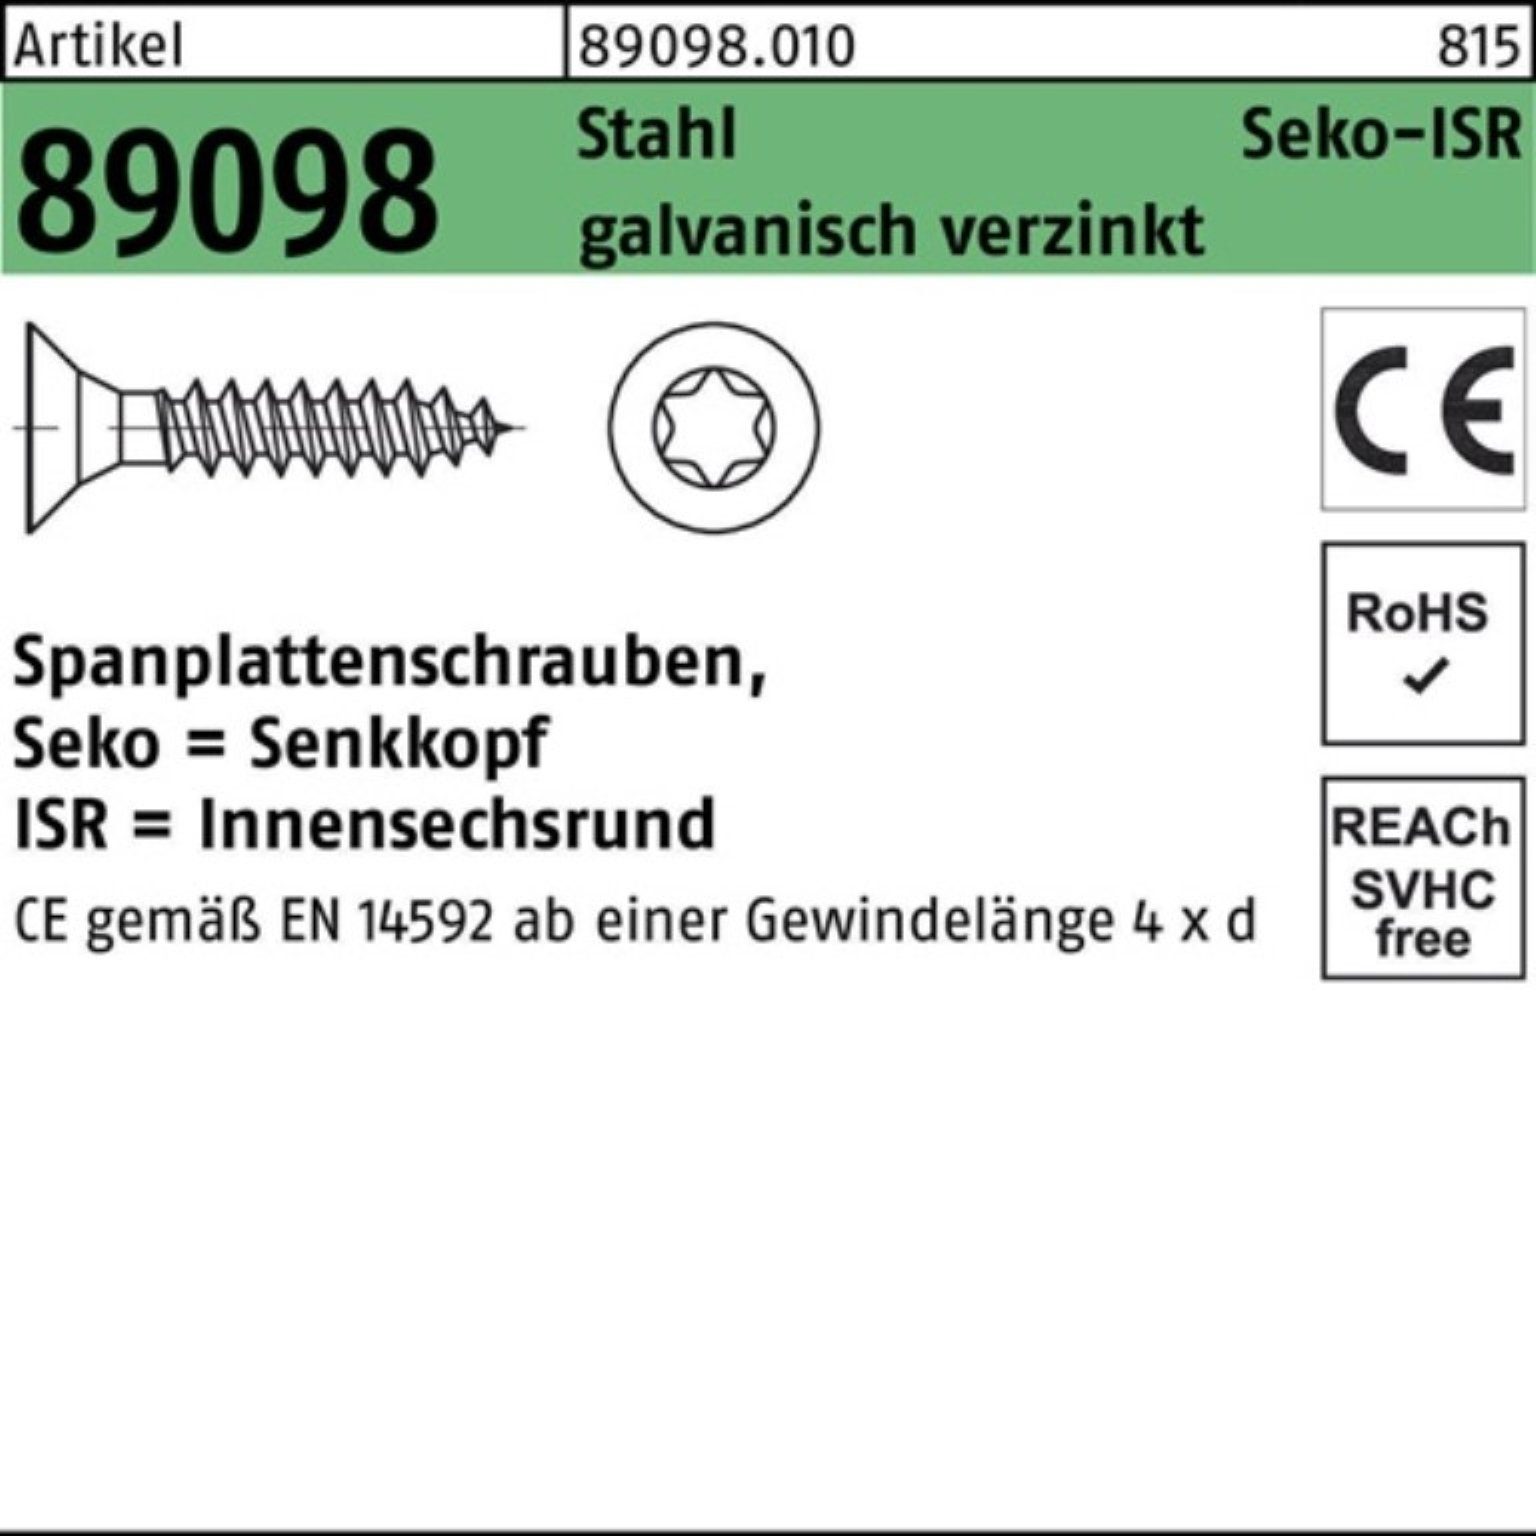 SEKO VG 89098 gal Spanplattenschraube Spanplattenschraube Pack Stahl 3x25-T10 R 1000er Reyher ISR